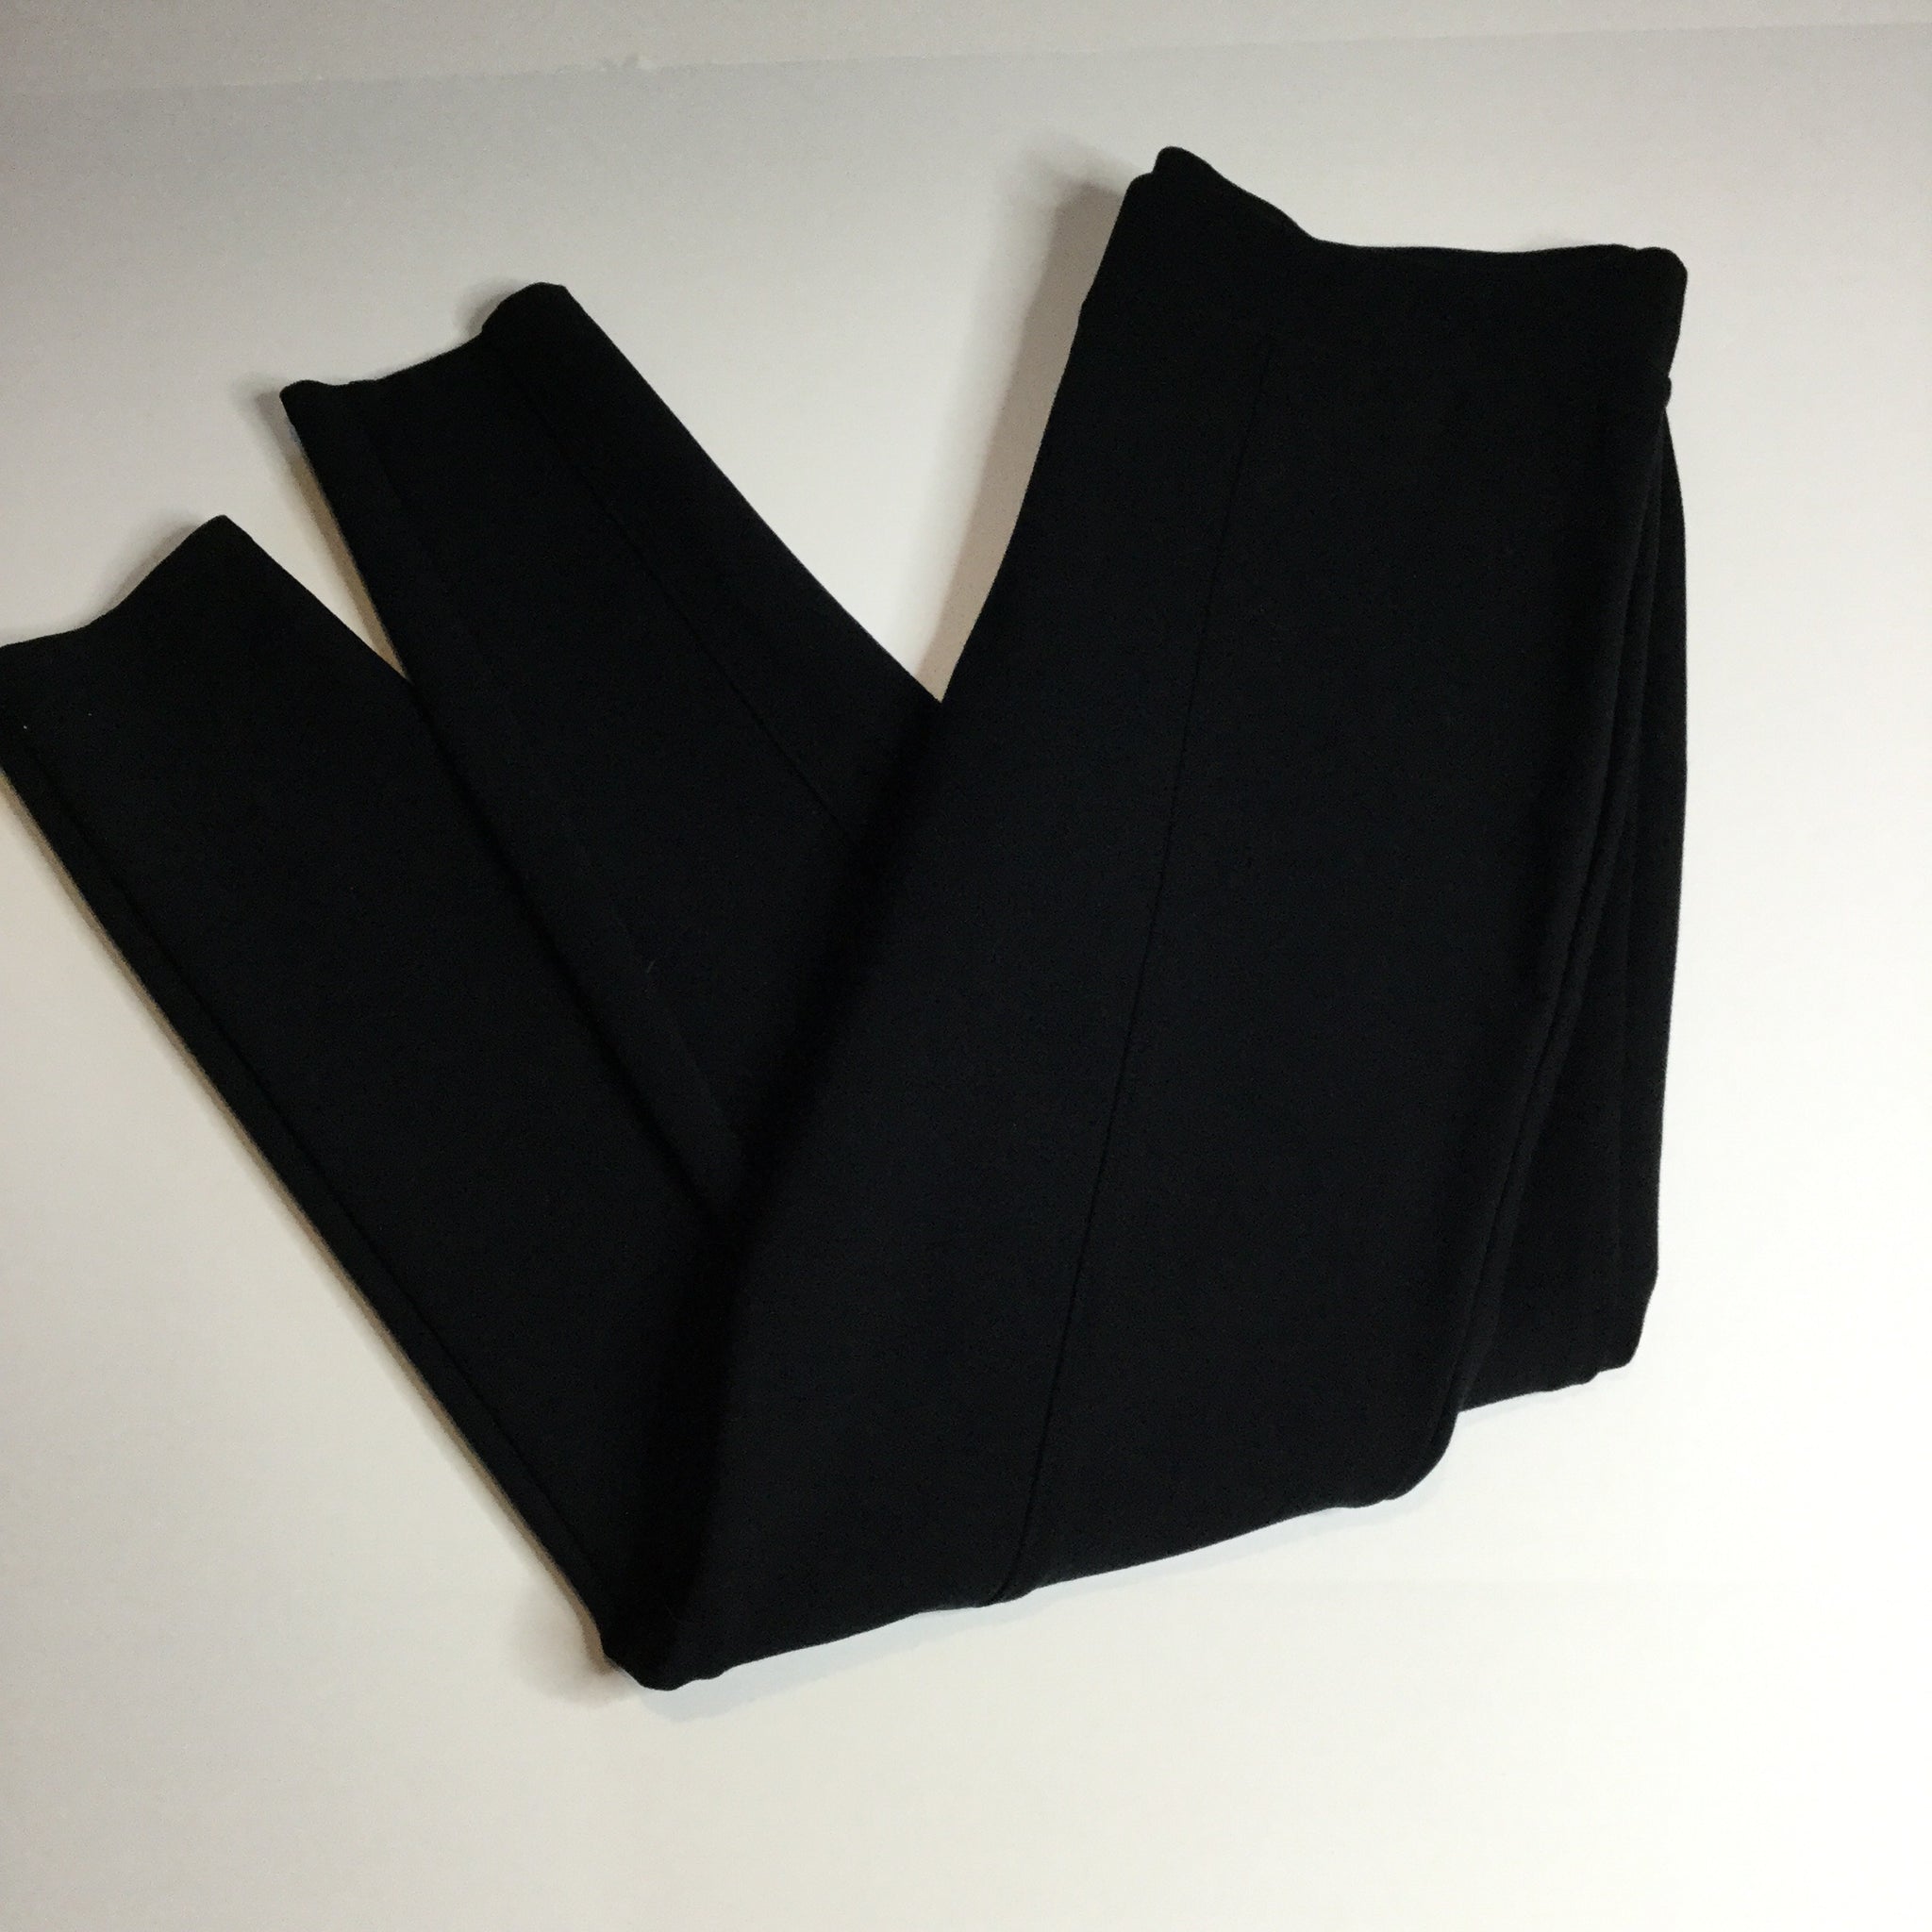 Ava & Viv black structured leggings